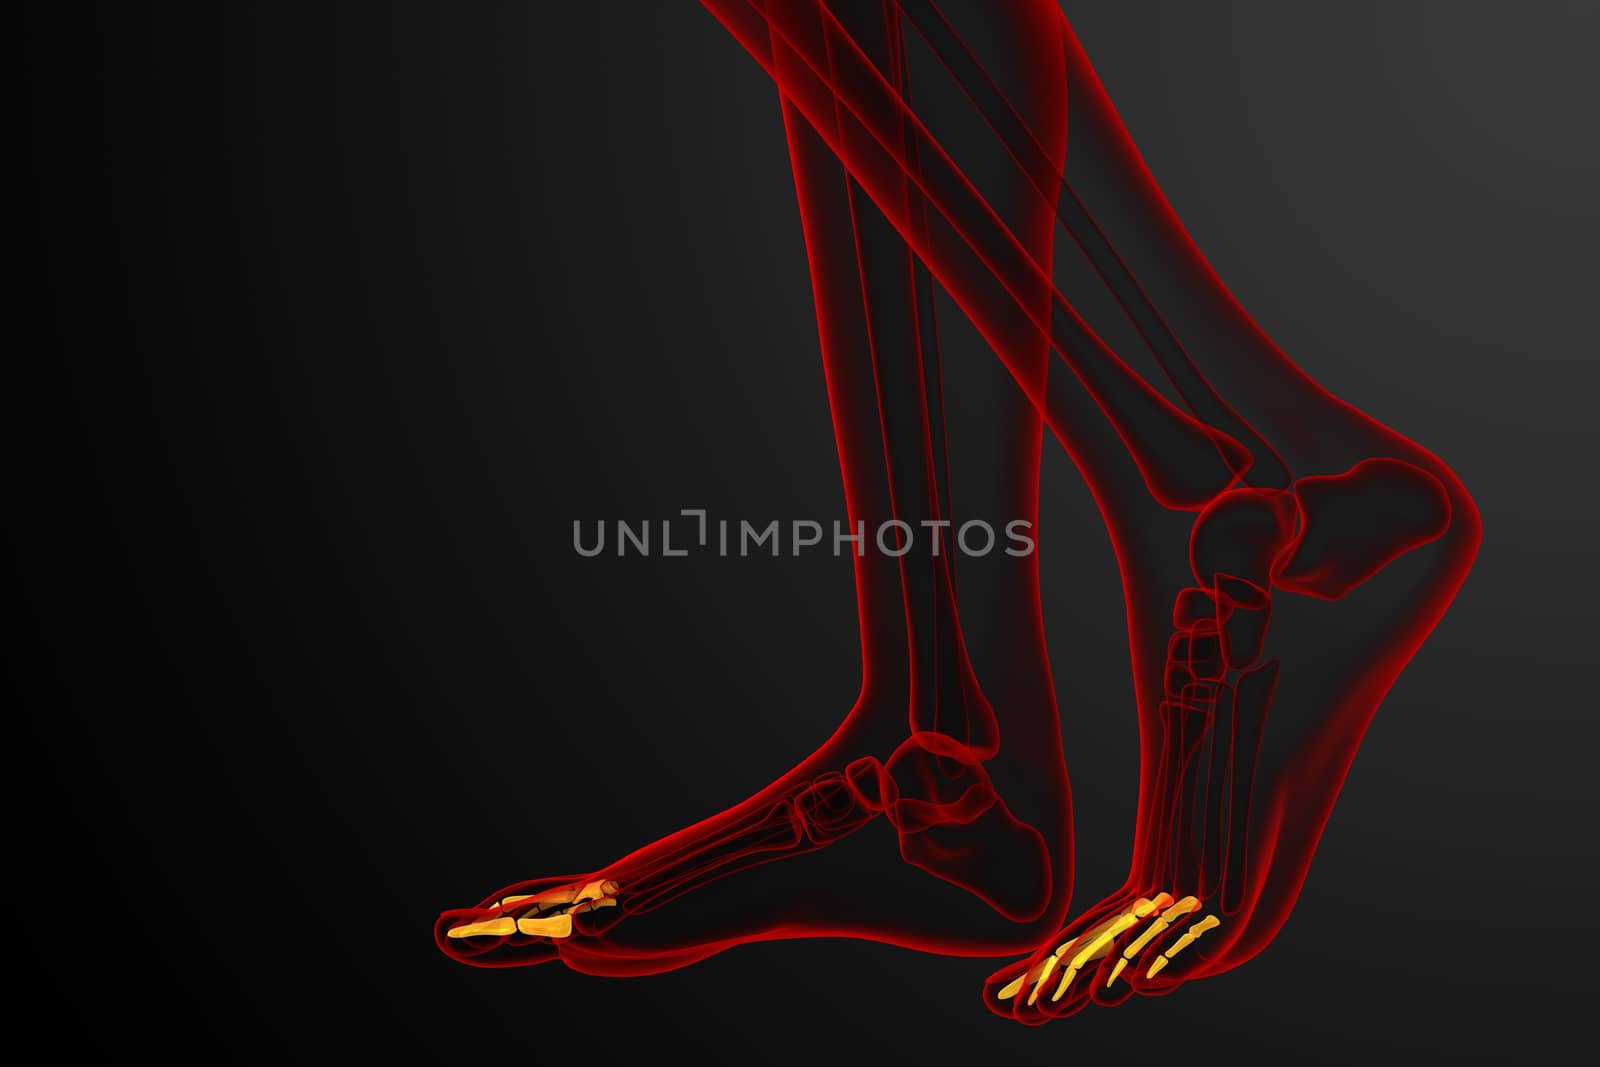 3d render medical illustration of the phalanges foot - side view